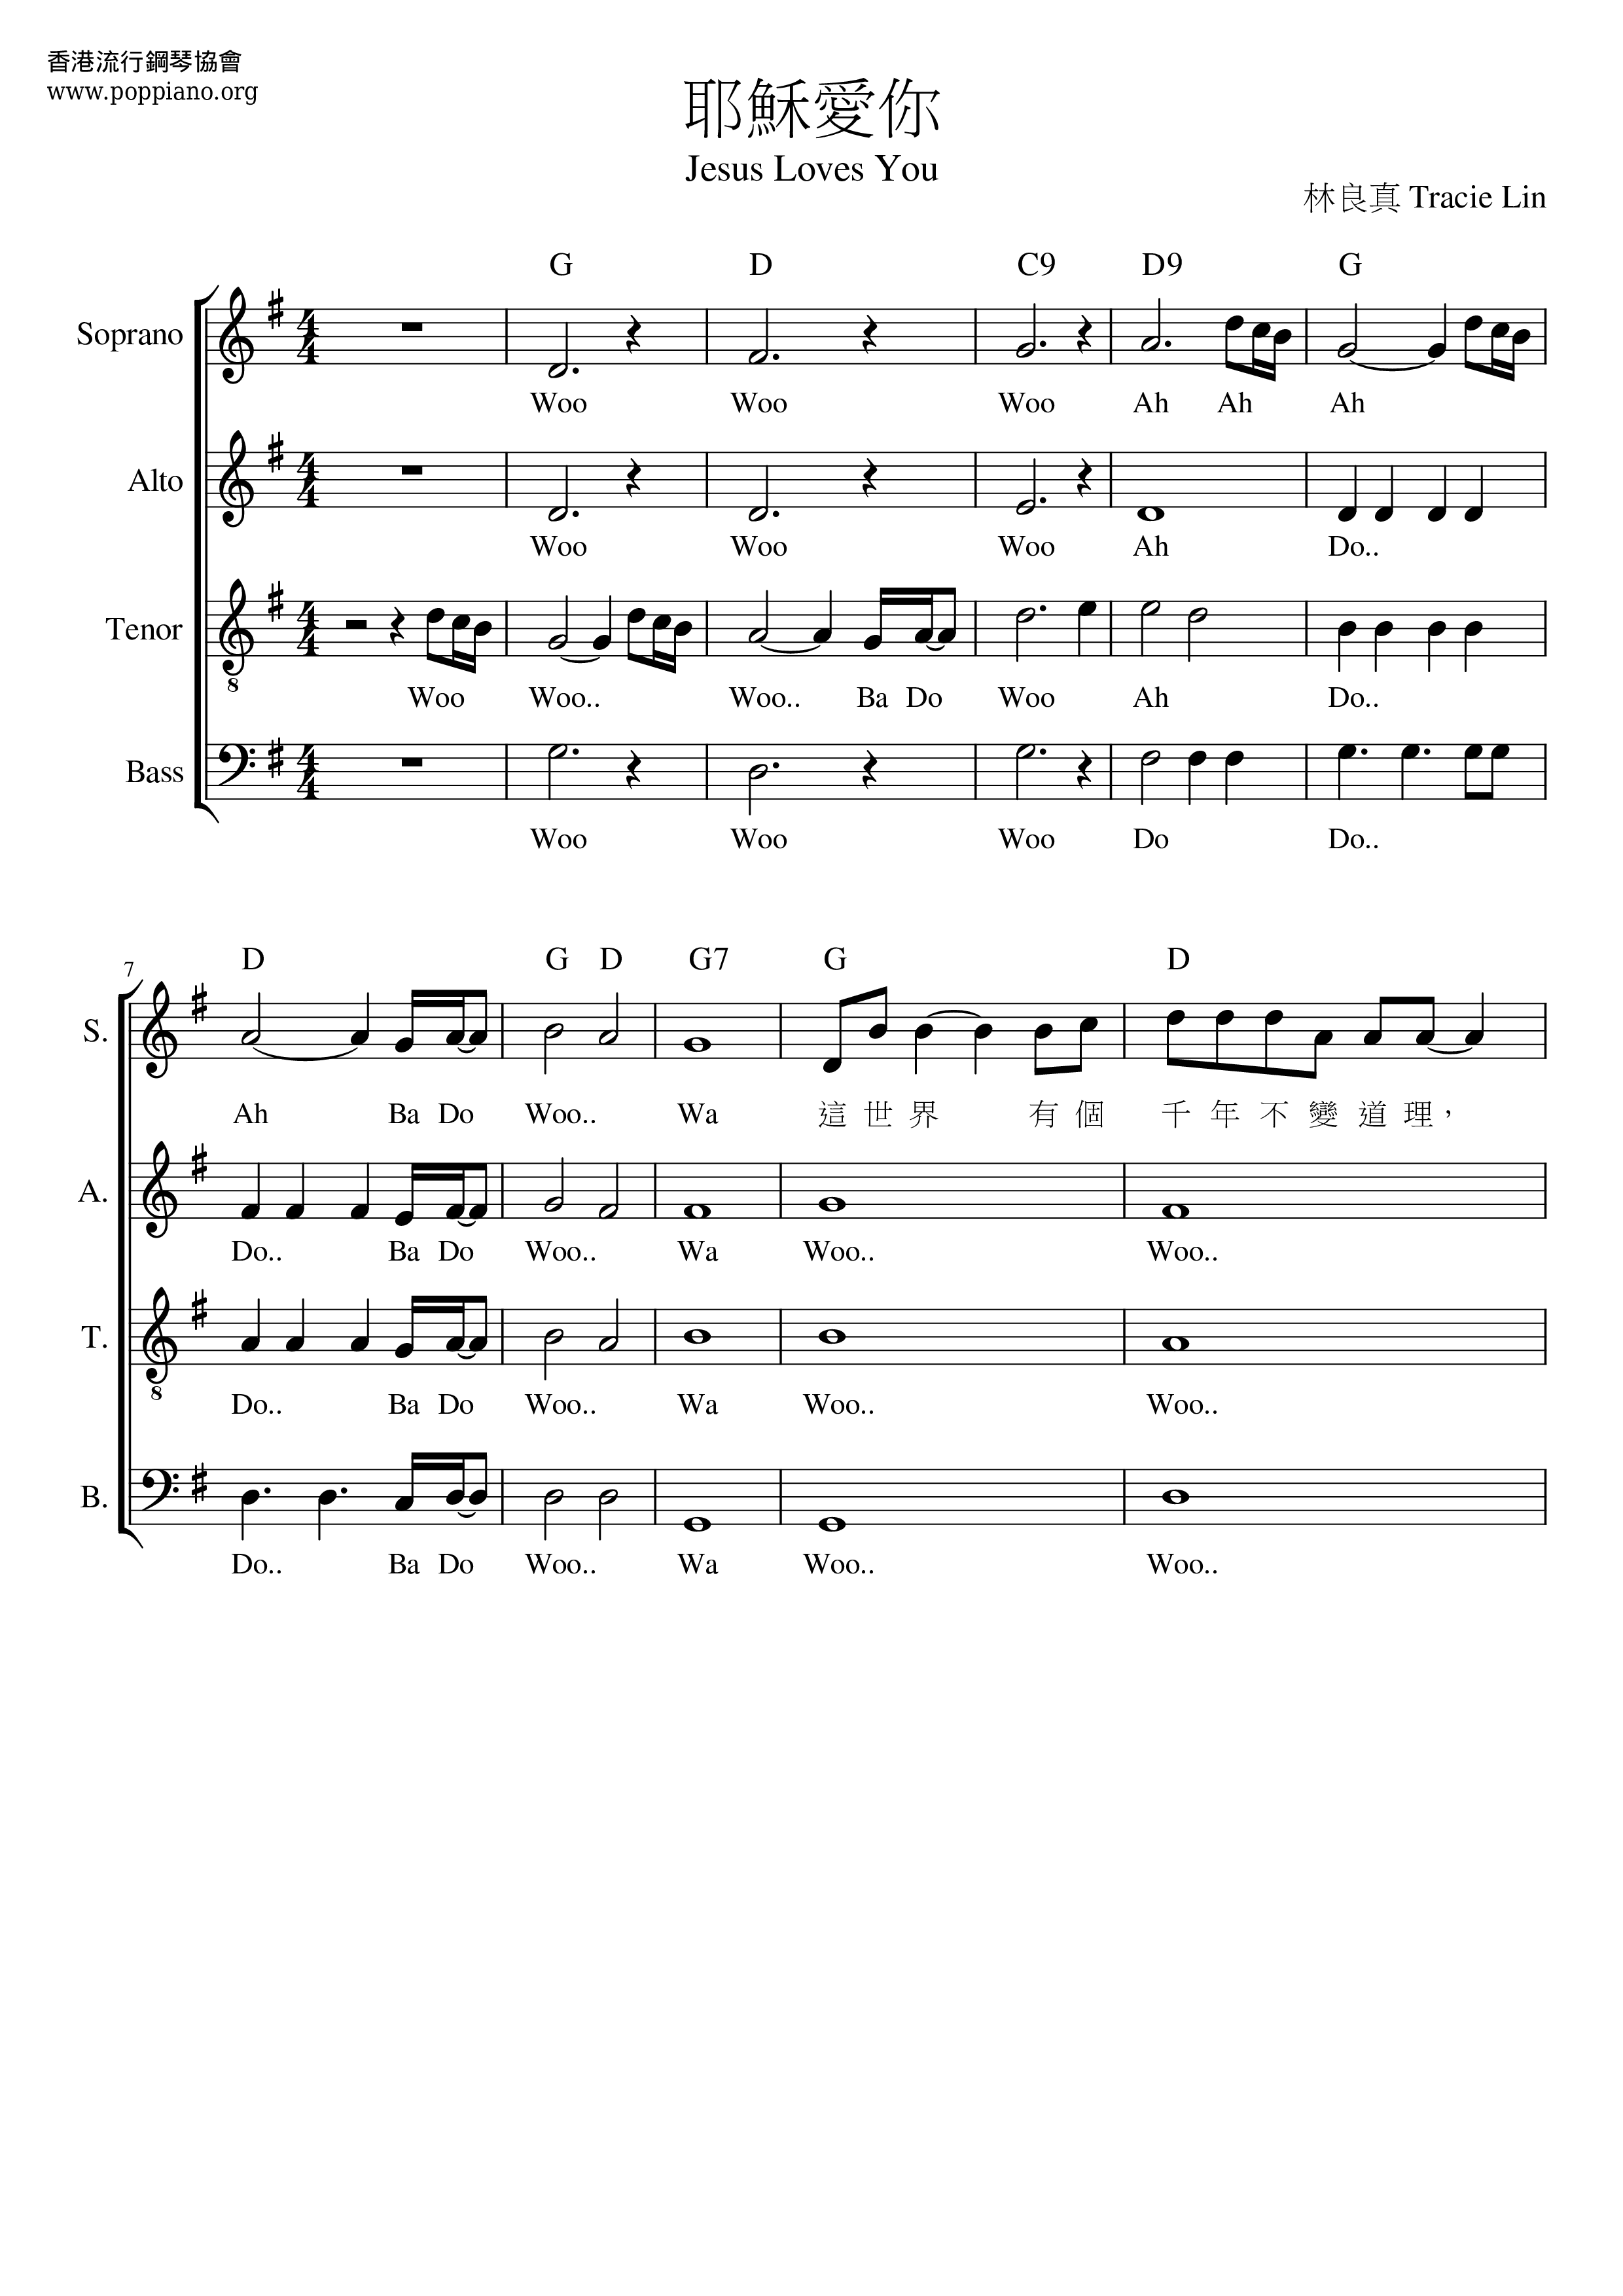 诗歌 耶稣爱你琴谱 五线谱pdf 香港流行钢琴协会琴谱下载